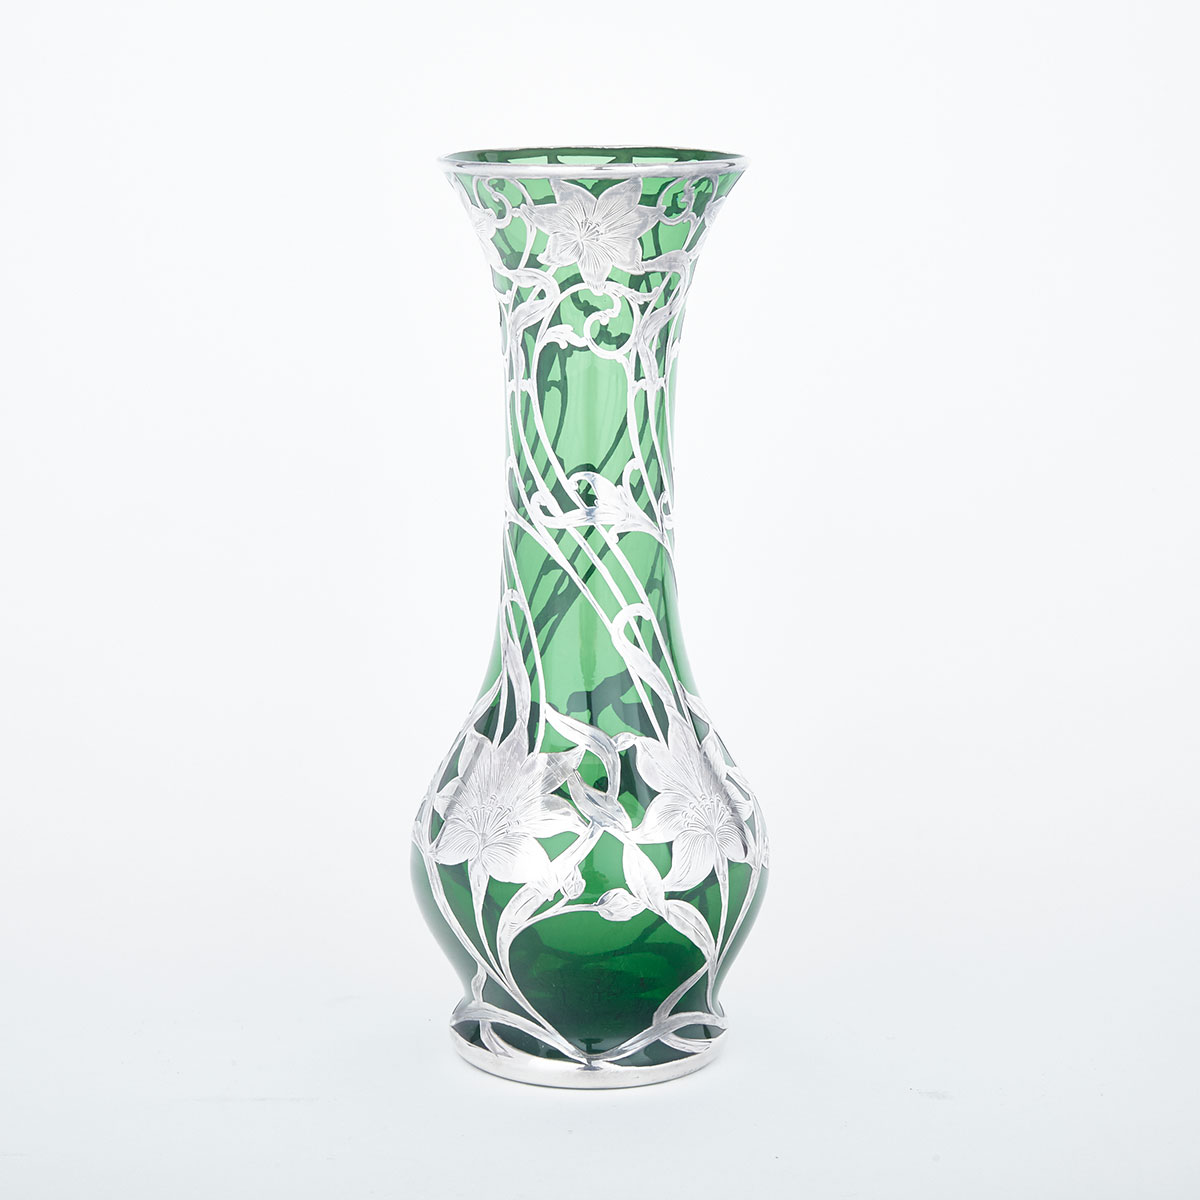 American Silver Overlaid Green Glass Vase, Alvin Mfg. Co., Providence, R.I., c.1900